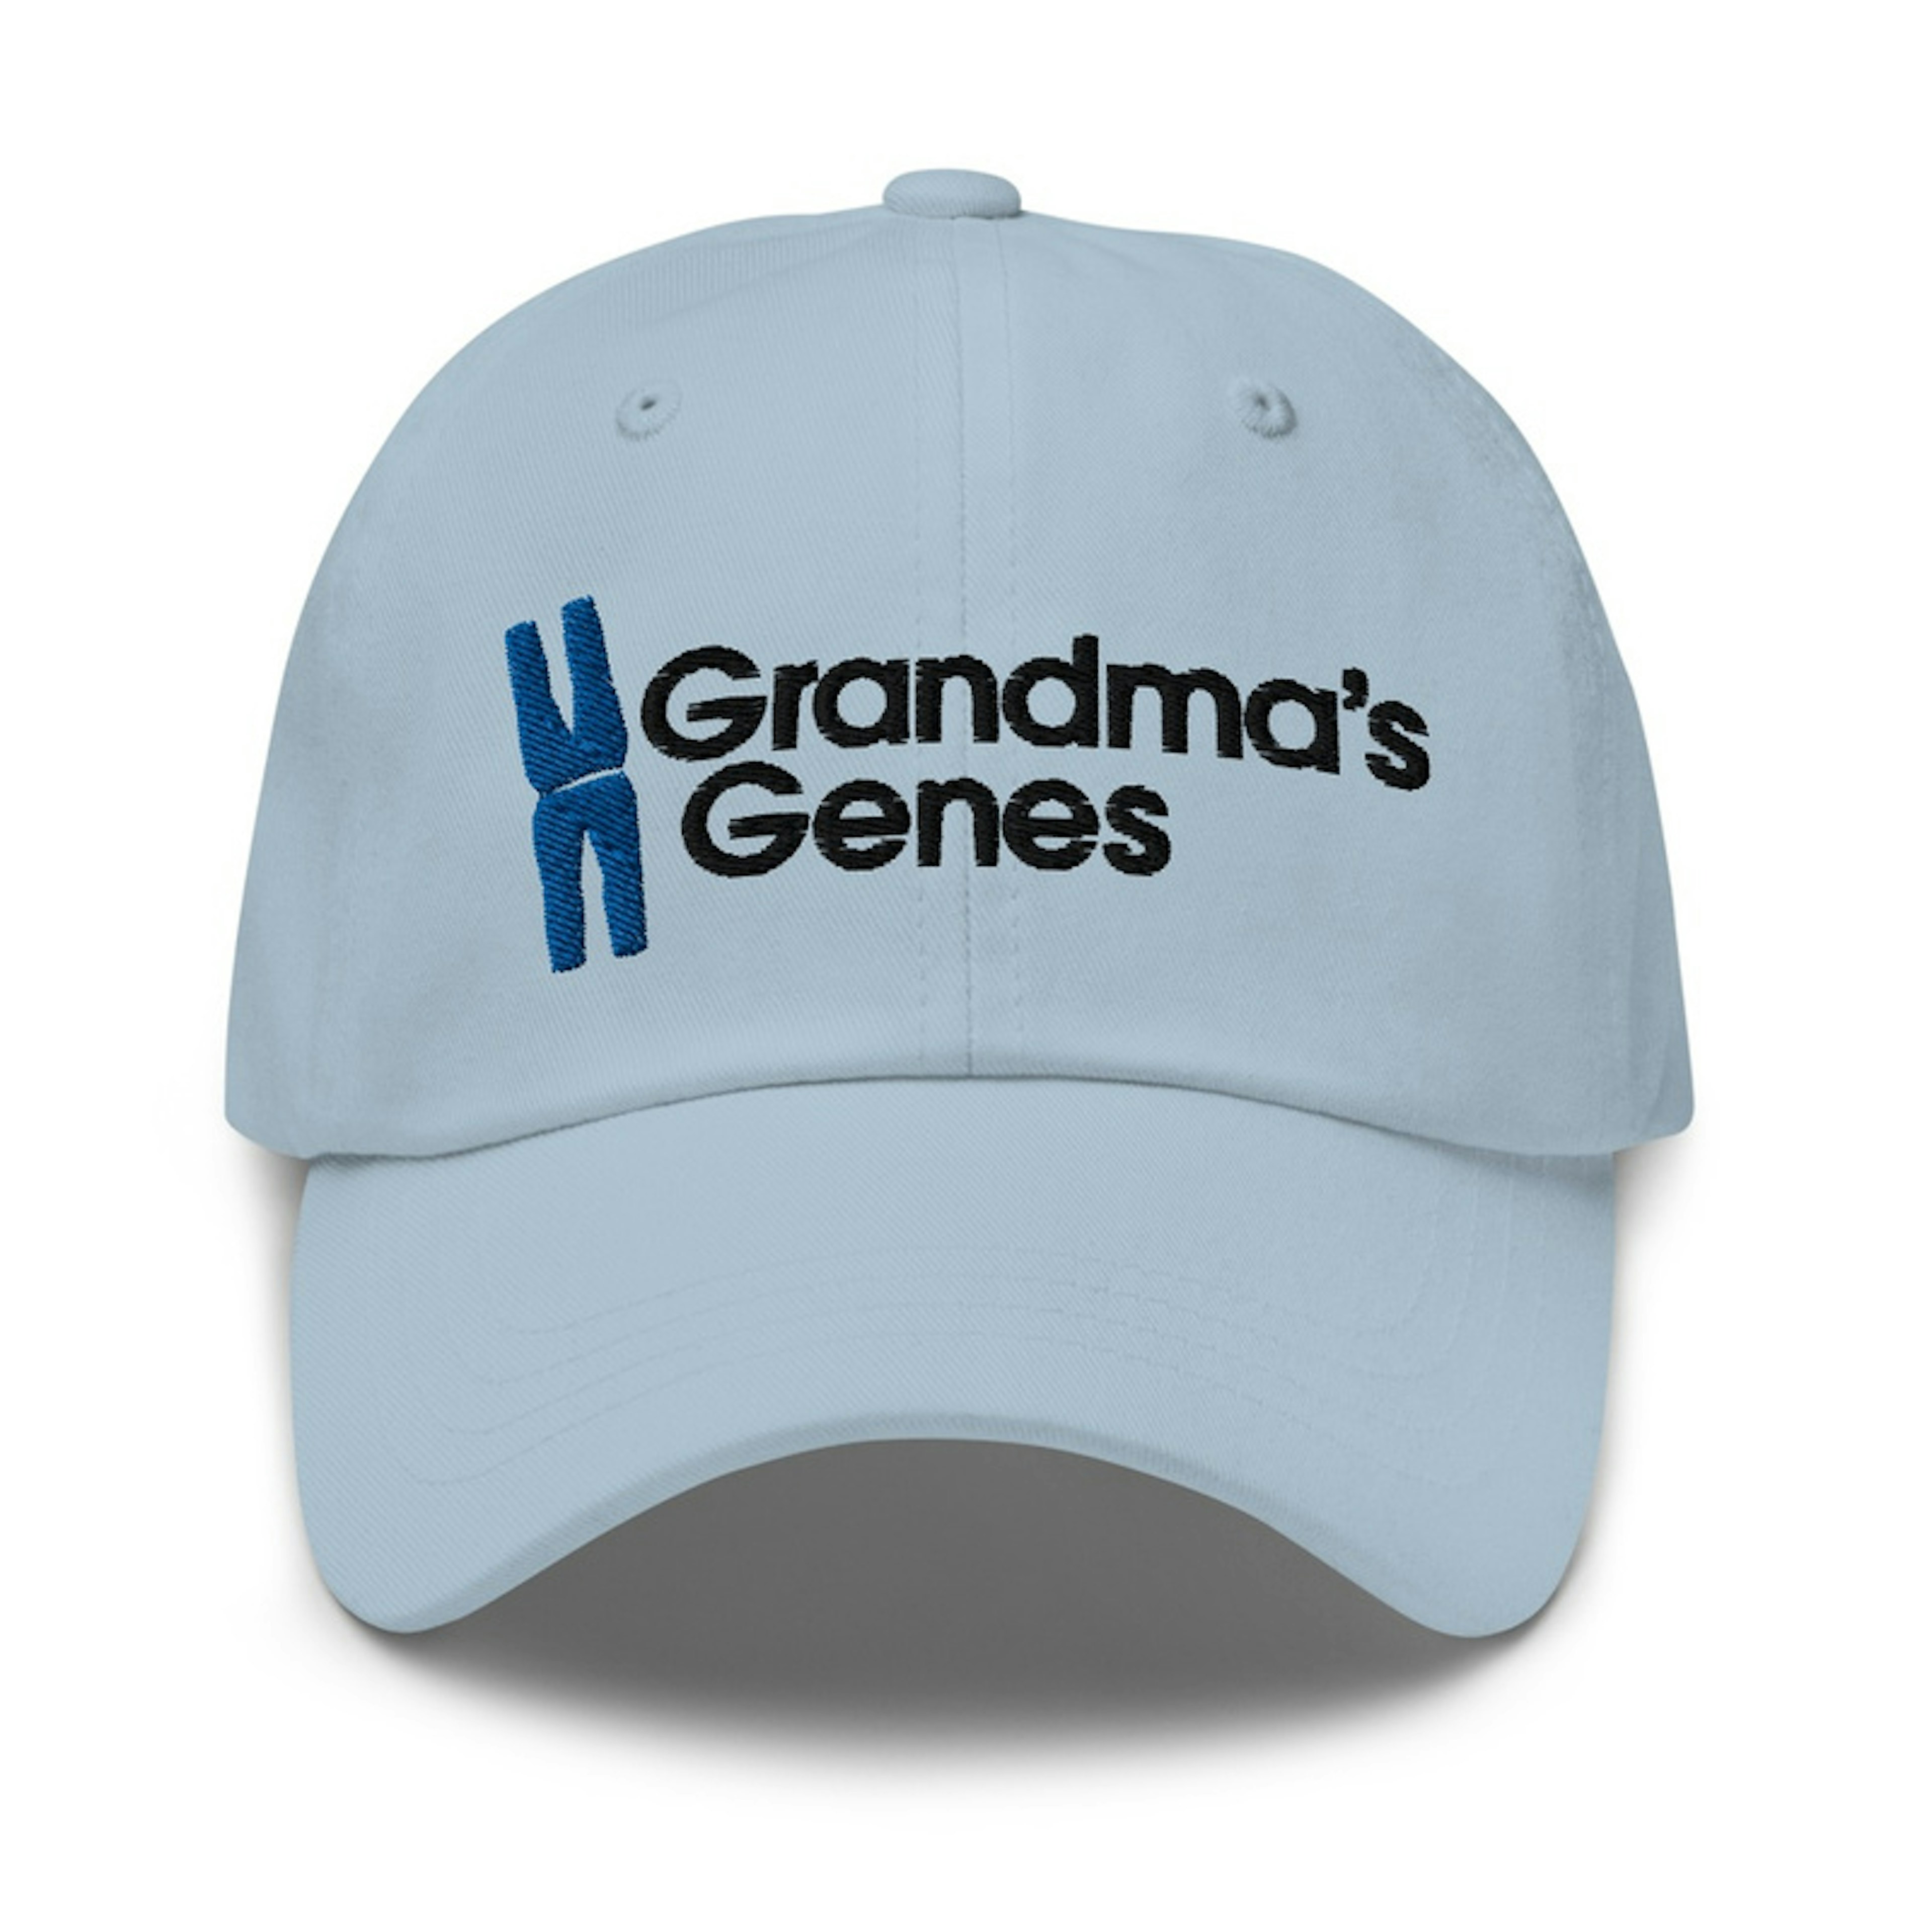 Grandmas Genes Light 